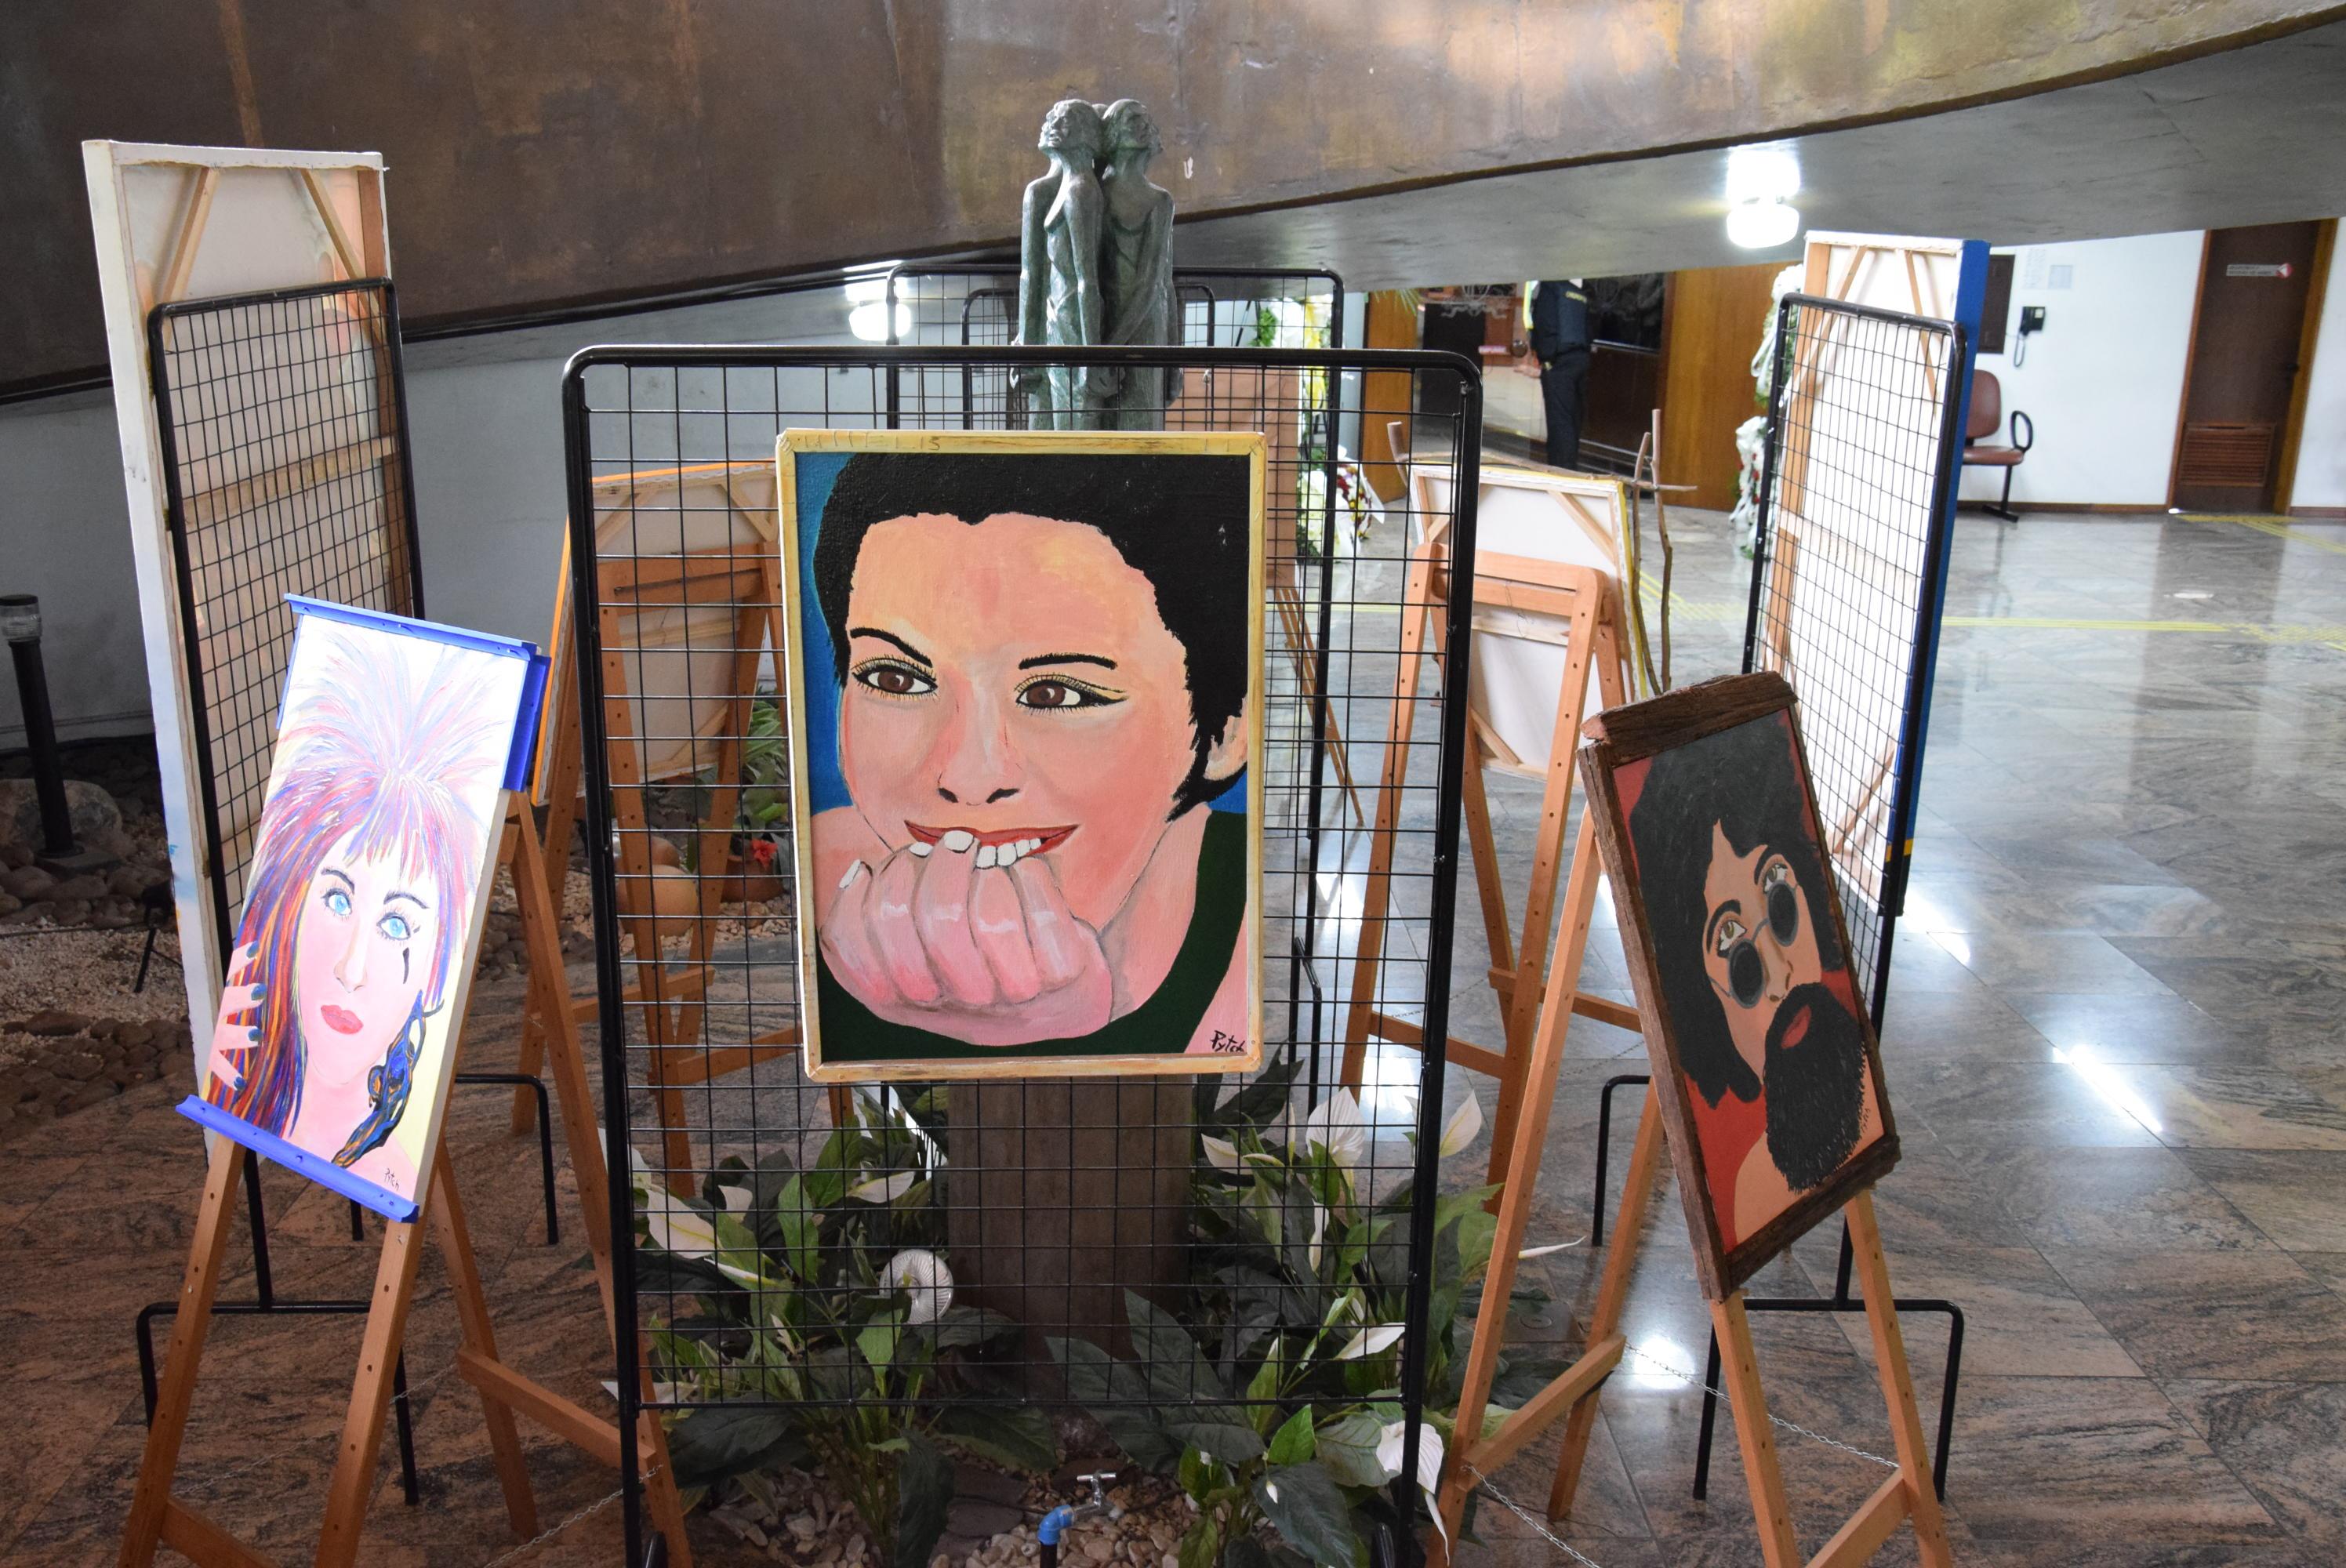 Retratos e autorretratos têm destaque na mostra do Espaço Cultural Mário Crosa